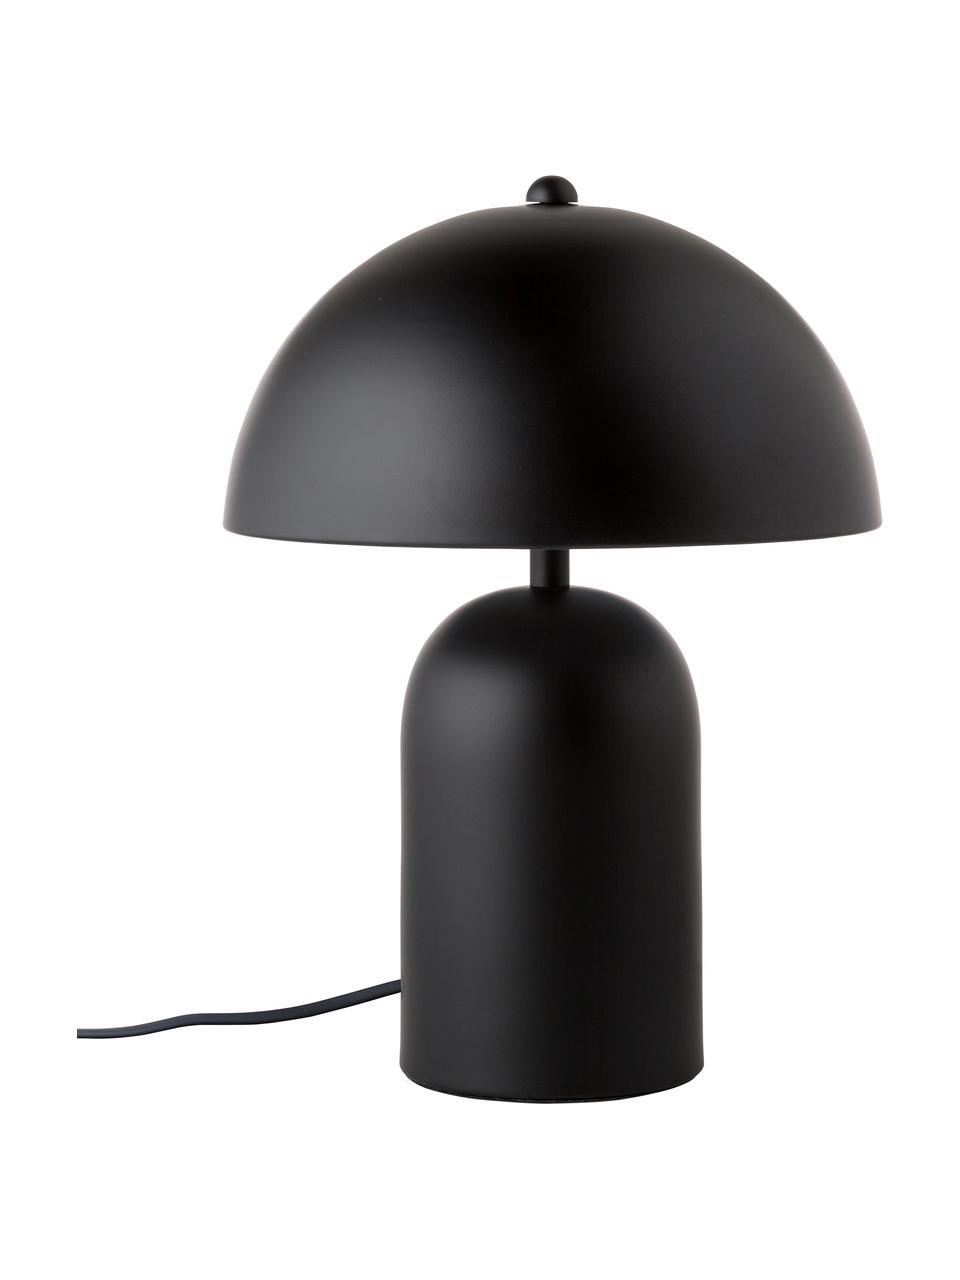 Lampa stołowa w stylu retro Walter, Czarny matowy, Ø 25 x W 33 cm